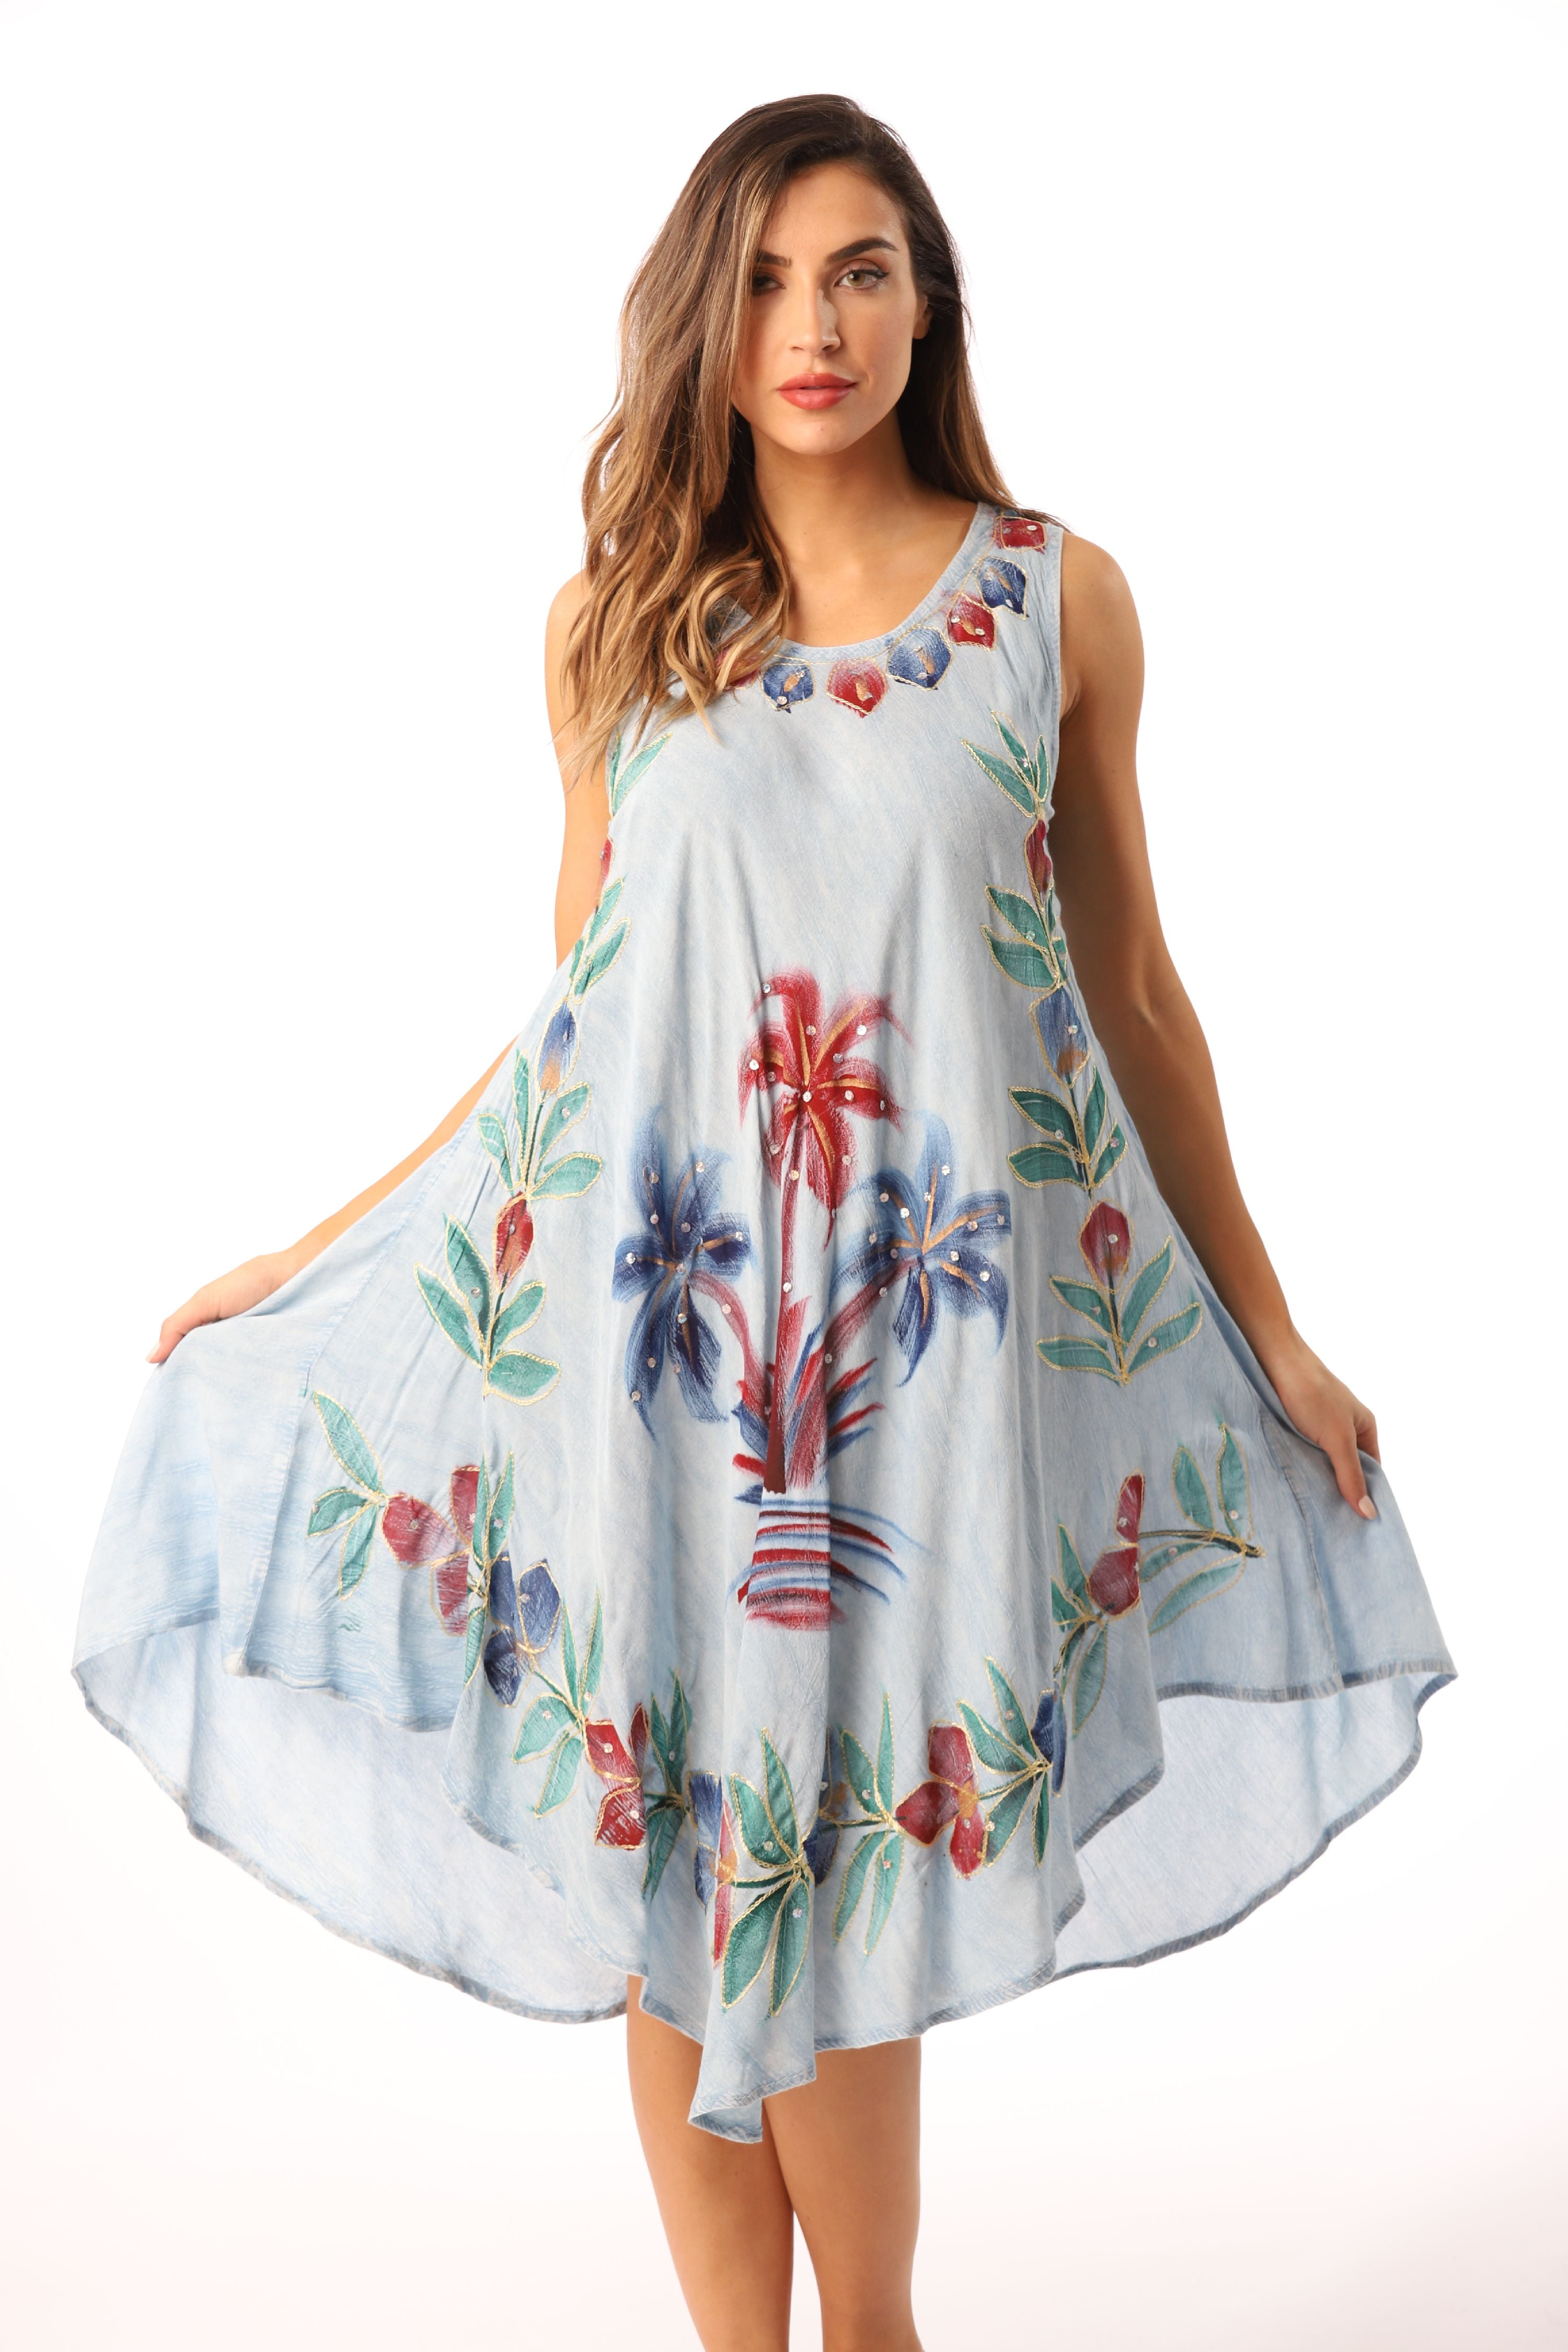 Riviera Sun Dress Dresses for Women (1X, Light Denim) - Walmart.com